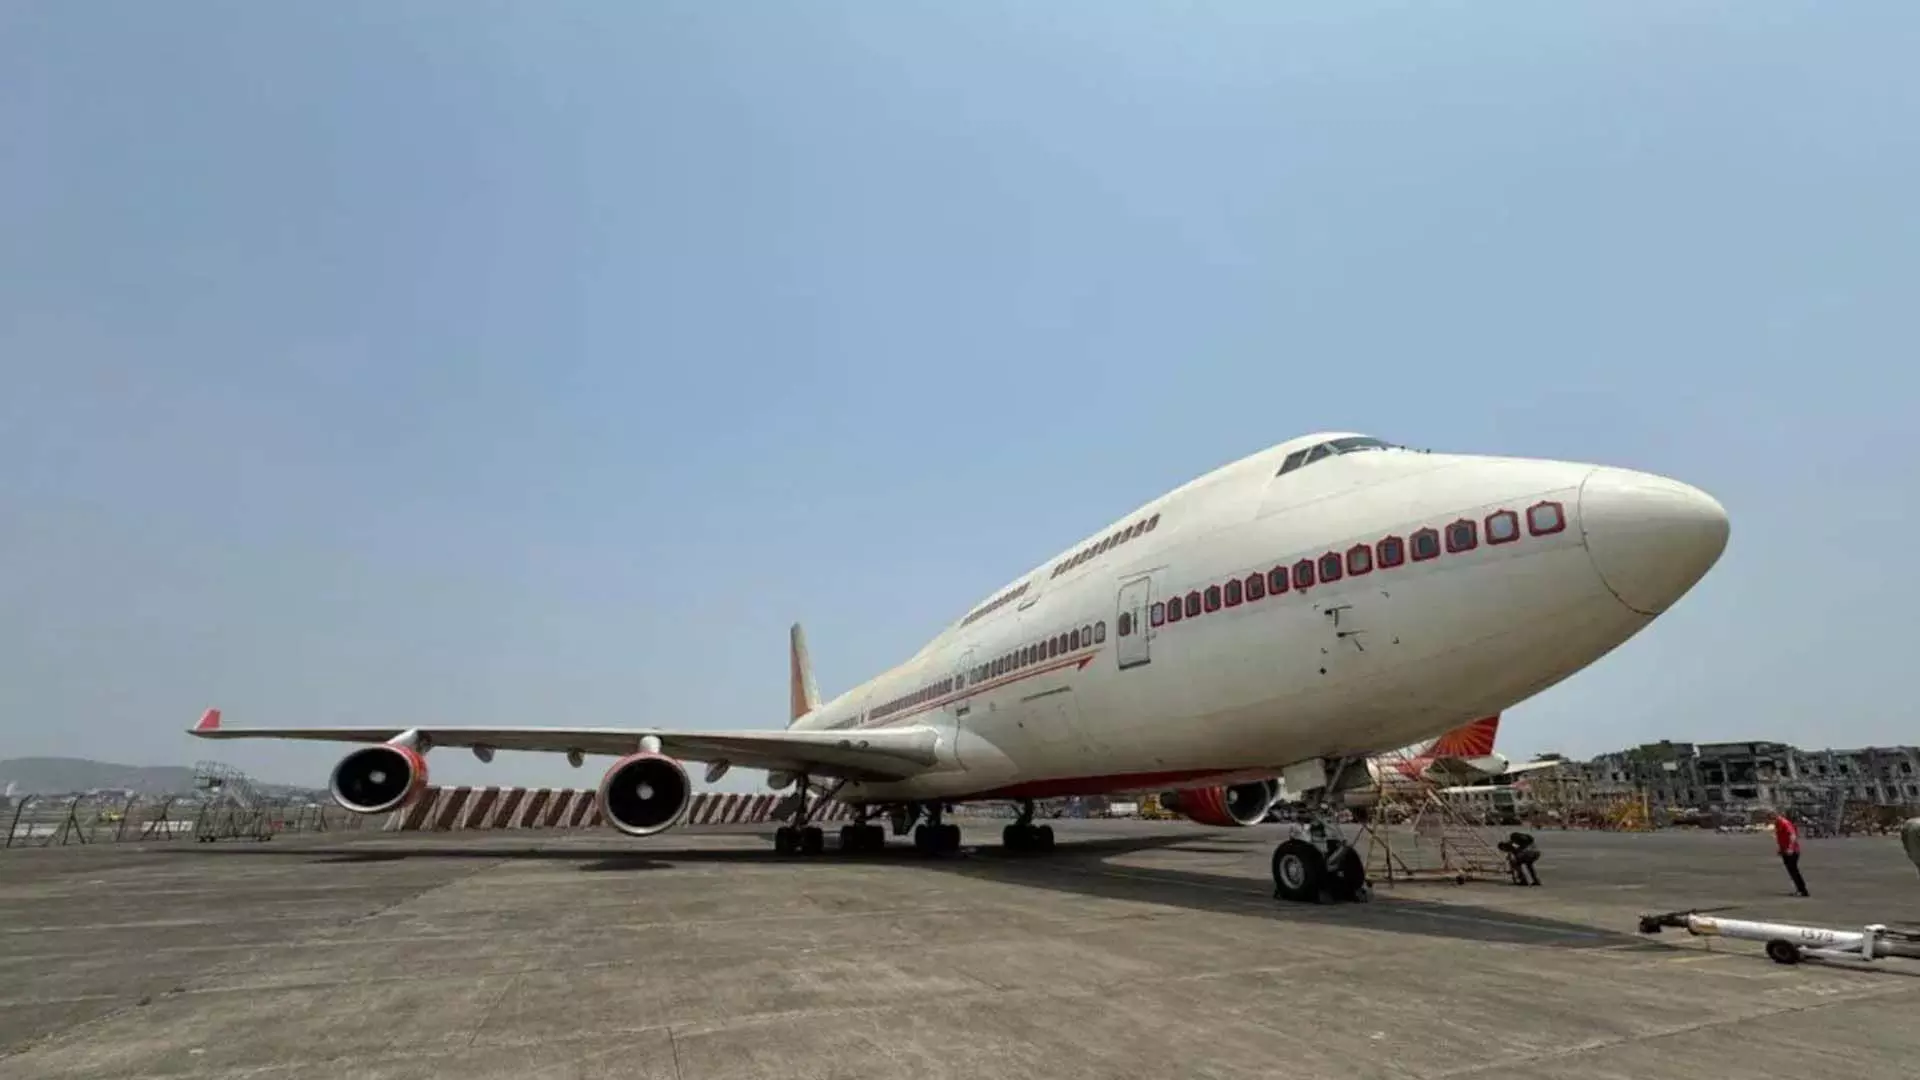 एयर इंडिया का प्रतिष्ठित बोइंग 747, जिसे आसमान की रानी कहा जाता है, अपने स्टाइल में सामने आया